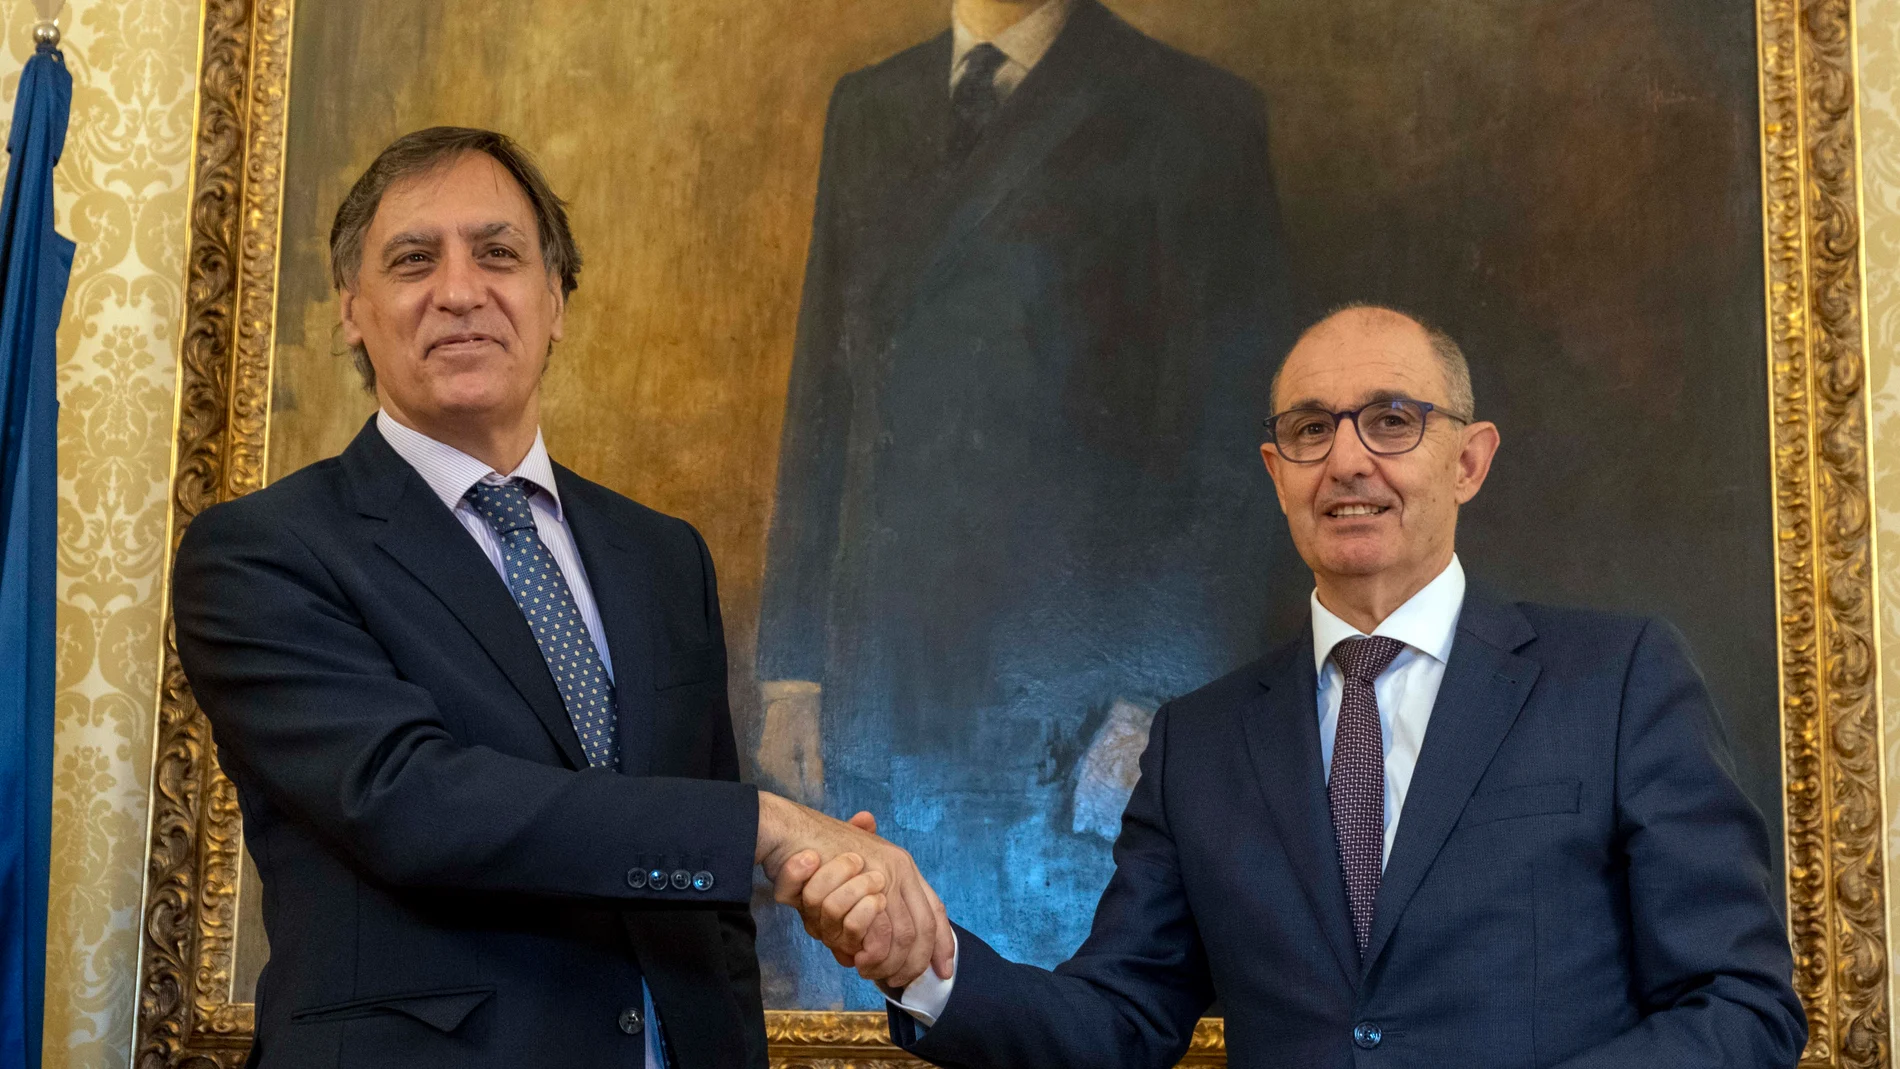 El alcalde de Salamanca, Carlos García Carbayo, y el director general de Iberaval, Pedro Pisonero, firman un convenio de colaboración